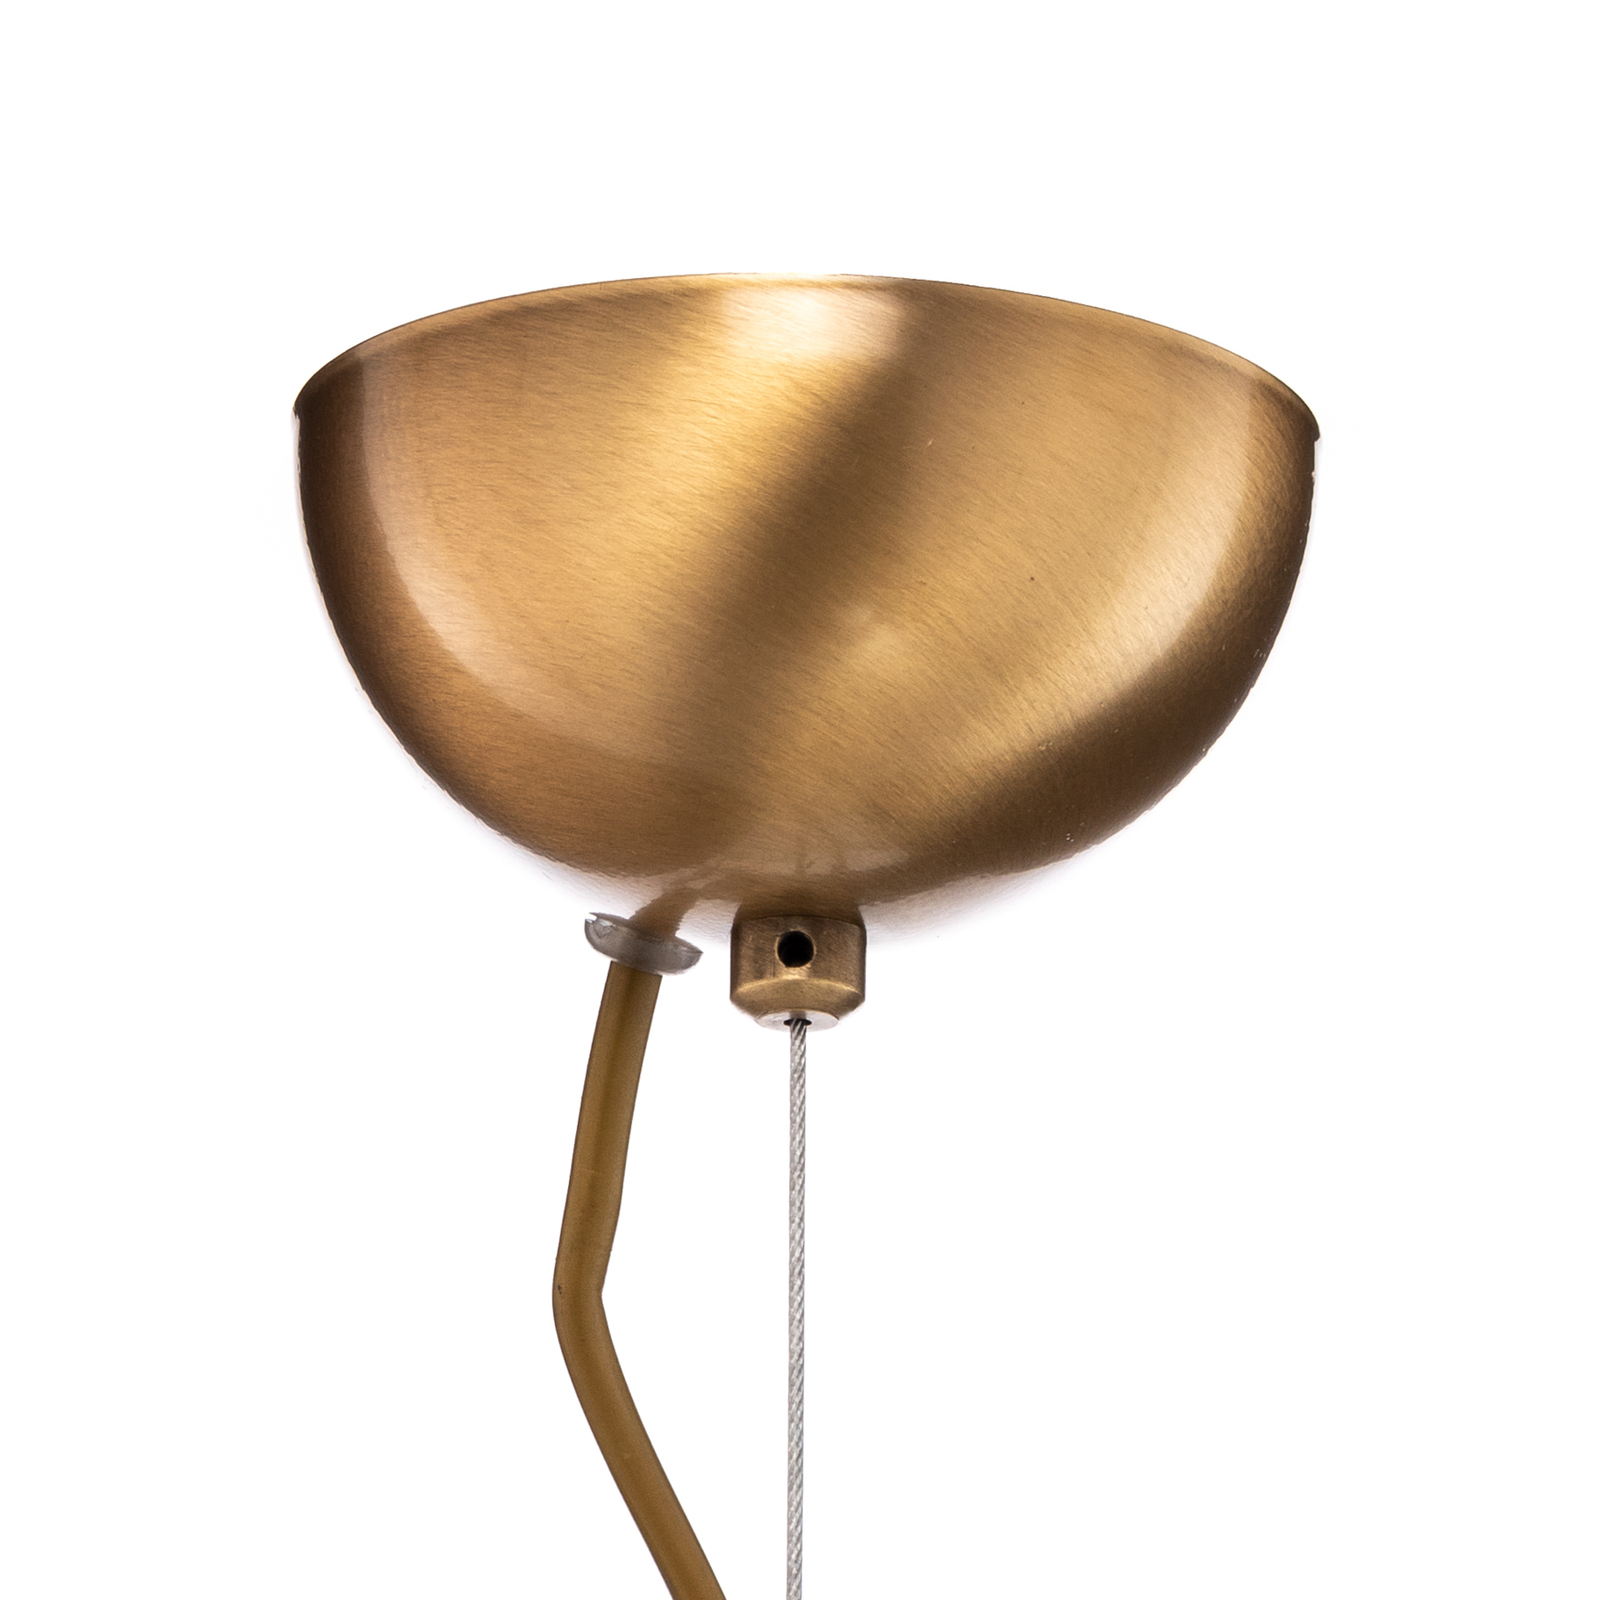 AV-1860-4EY pendant light, tinted glass lampshade